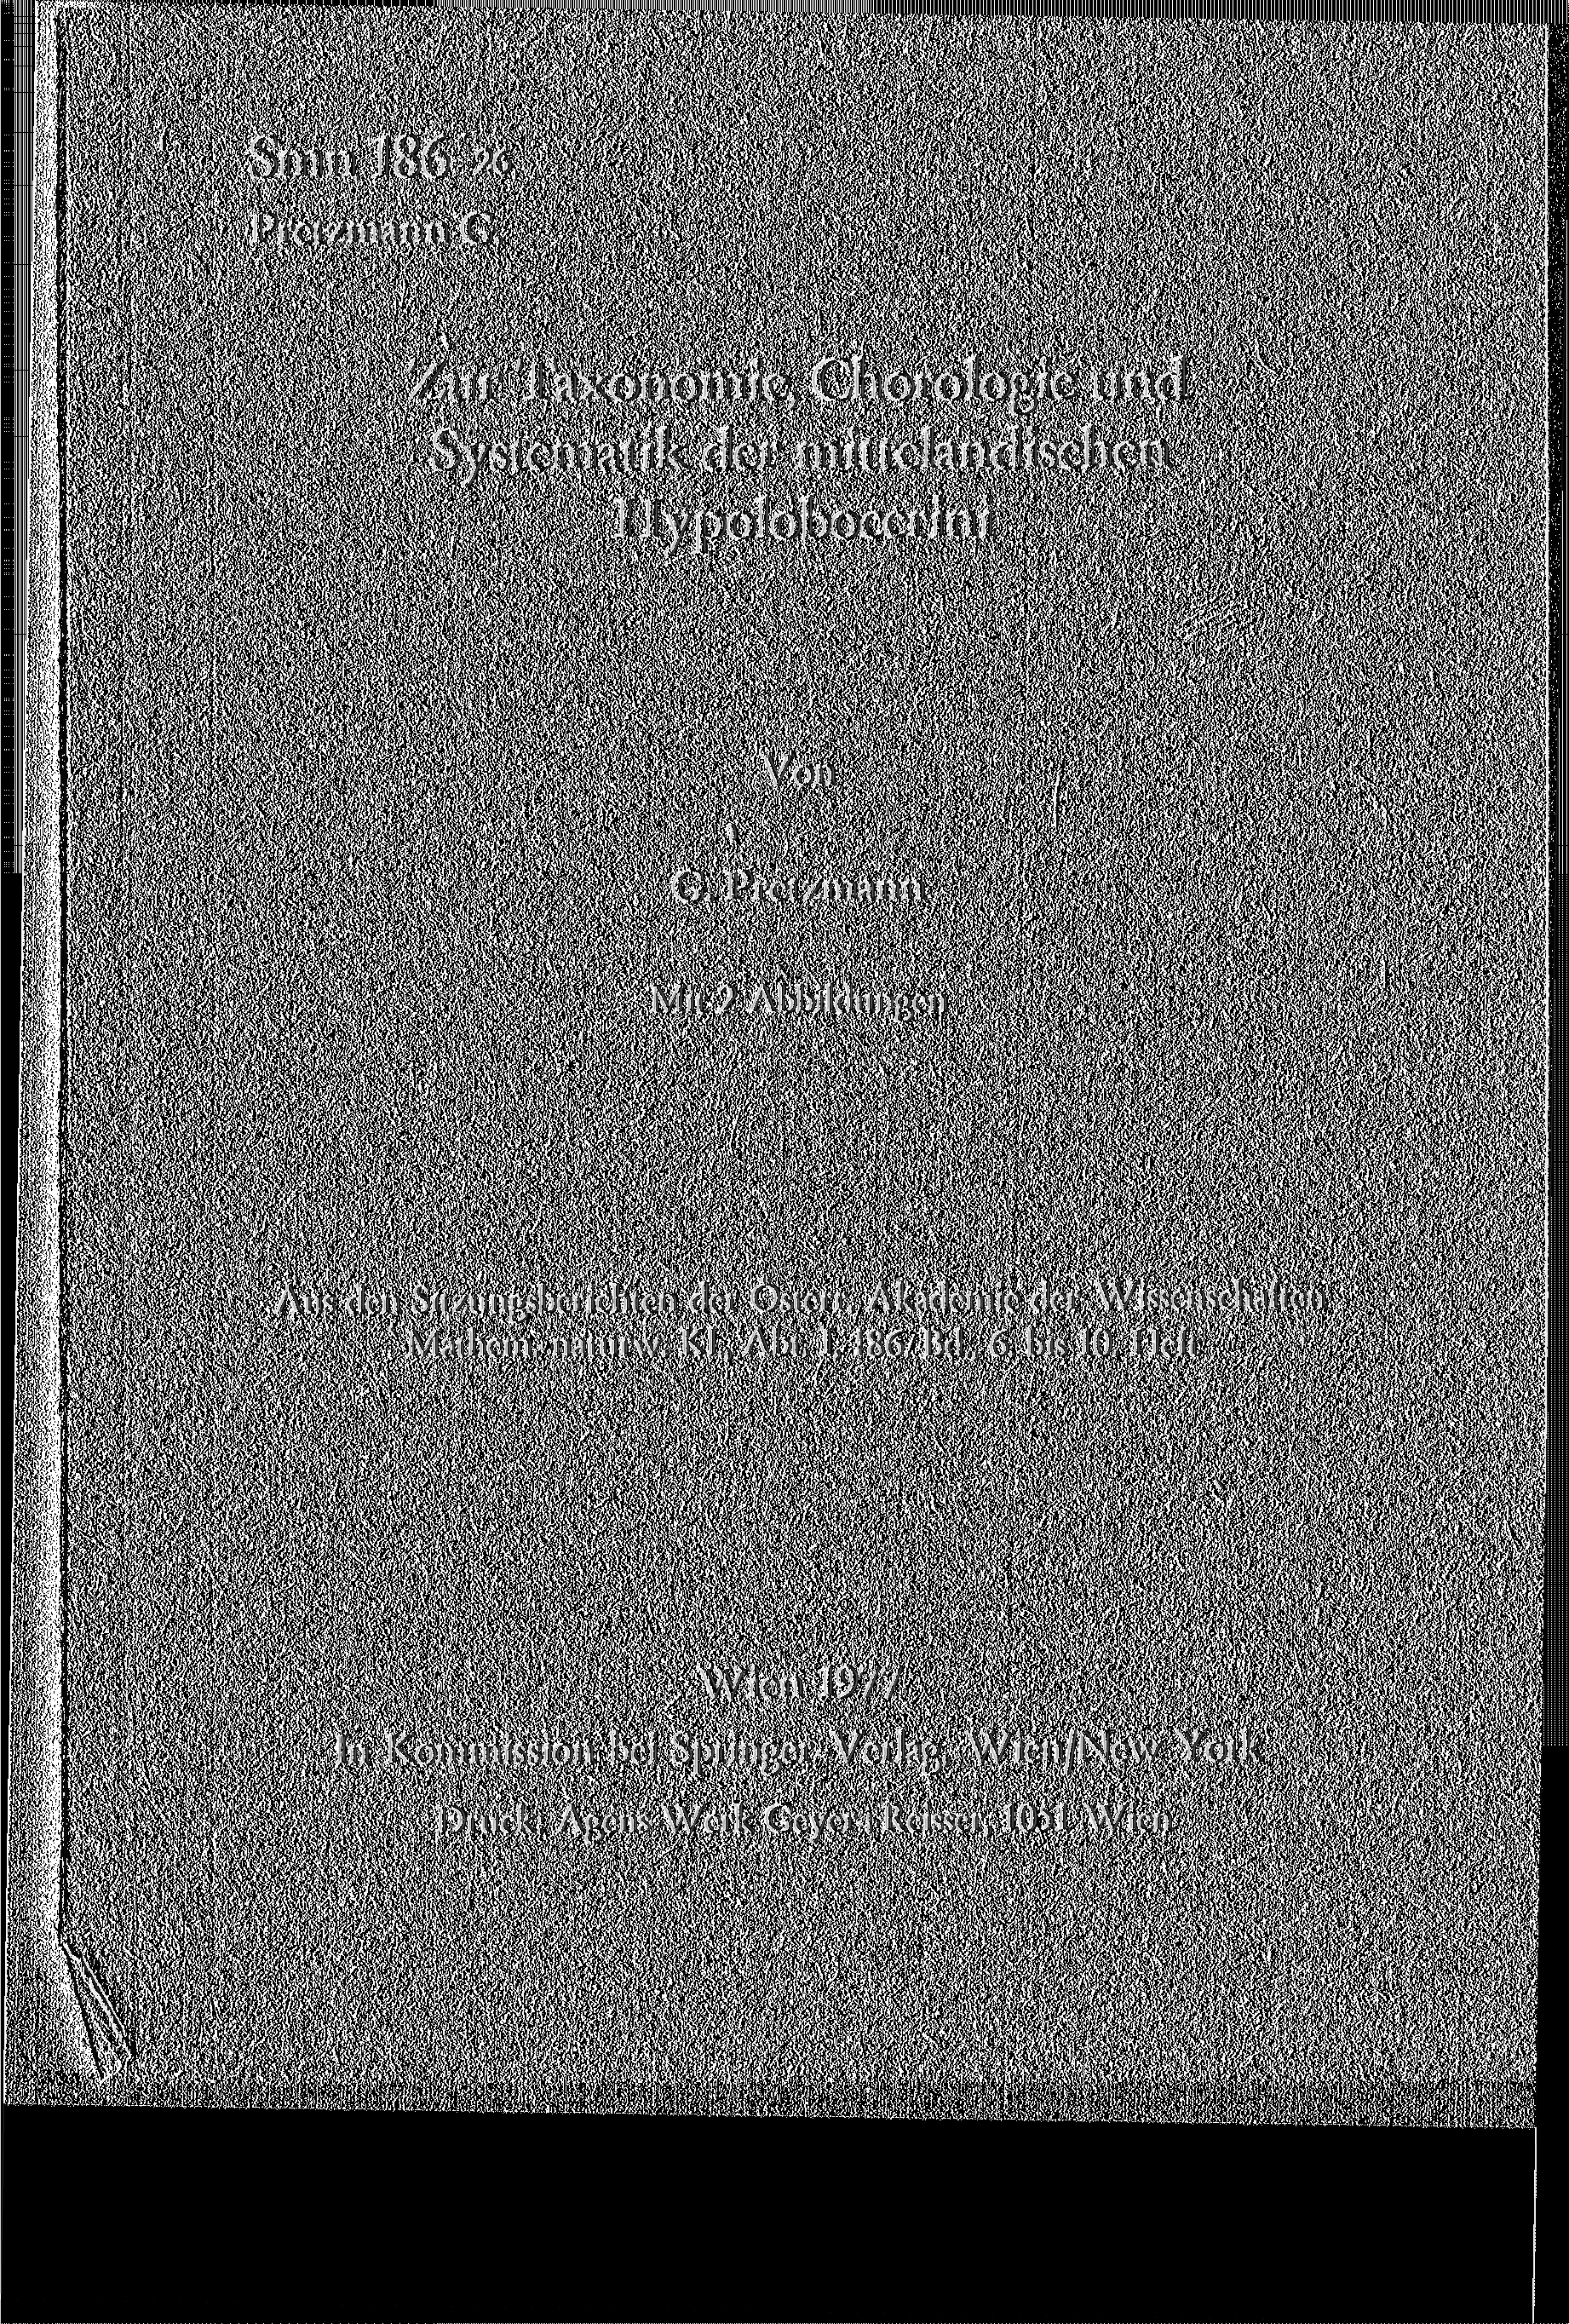 Smn 186-26 Pretzmann G. Zur Taxonomie, Chorologie und Systematik der mittelandischen Hypolobocerini Von G. Pretzmann Mit 2 Abbildungen Aus den Sitzungsberichten der Österr.